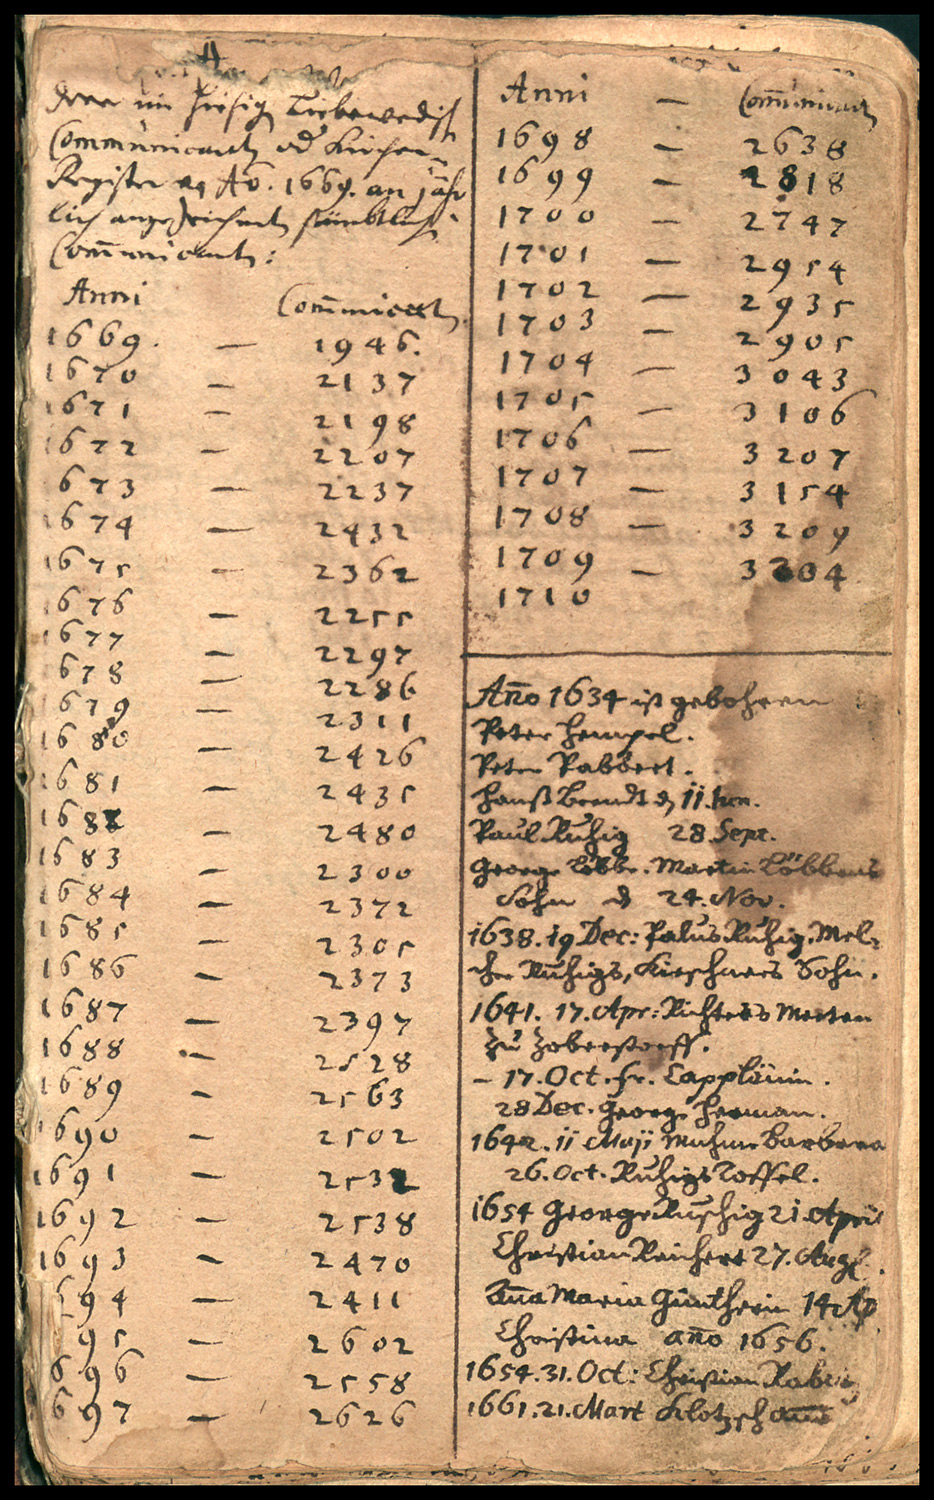 Museumstitel: Tagebuch des Gottlob Wintzler (1643-1711) und des Gottlob Heinrich Zehe (Schwiegersohn - 1681 geb.), Abbildung 3 (Museum des mitteldeutschen Wandermarionettentheaters CC BY-NC-SA)